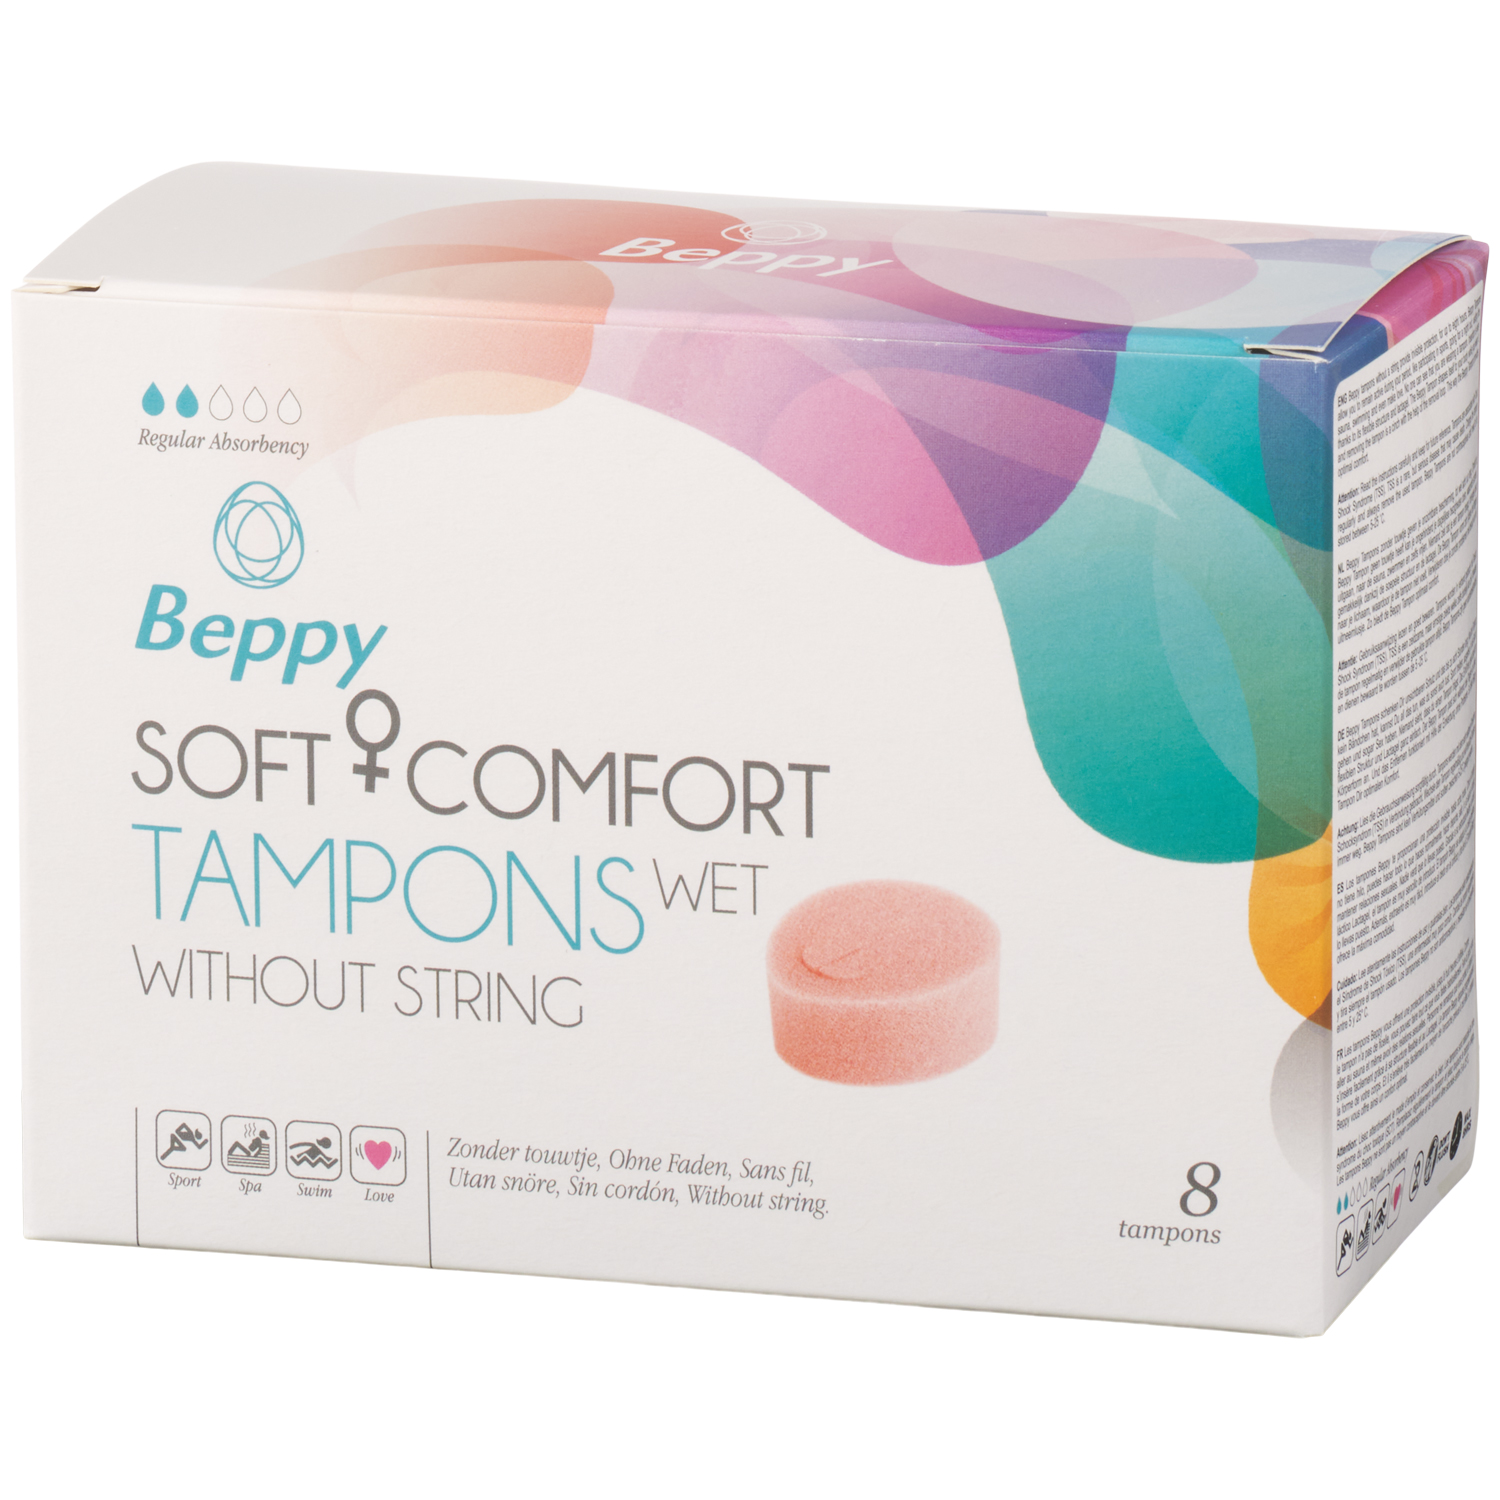 Beppy Soft + Comfort Tampons Wet 8 pcs  - Ljusrosa